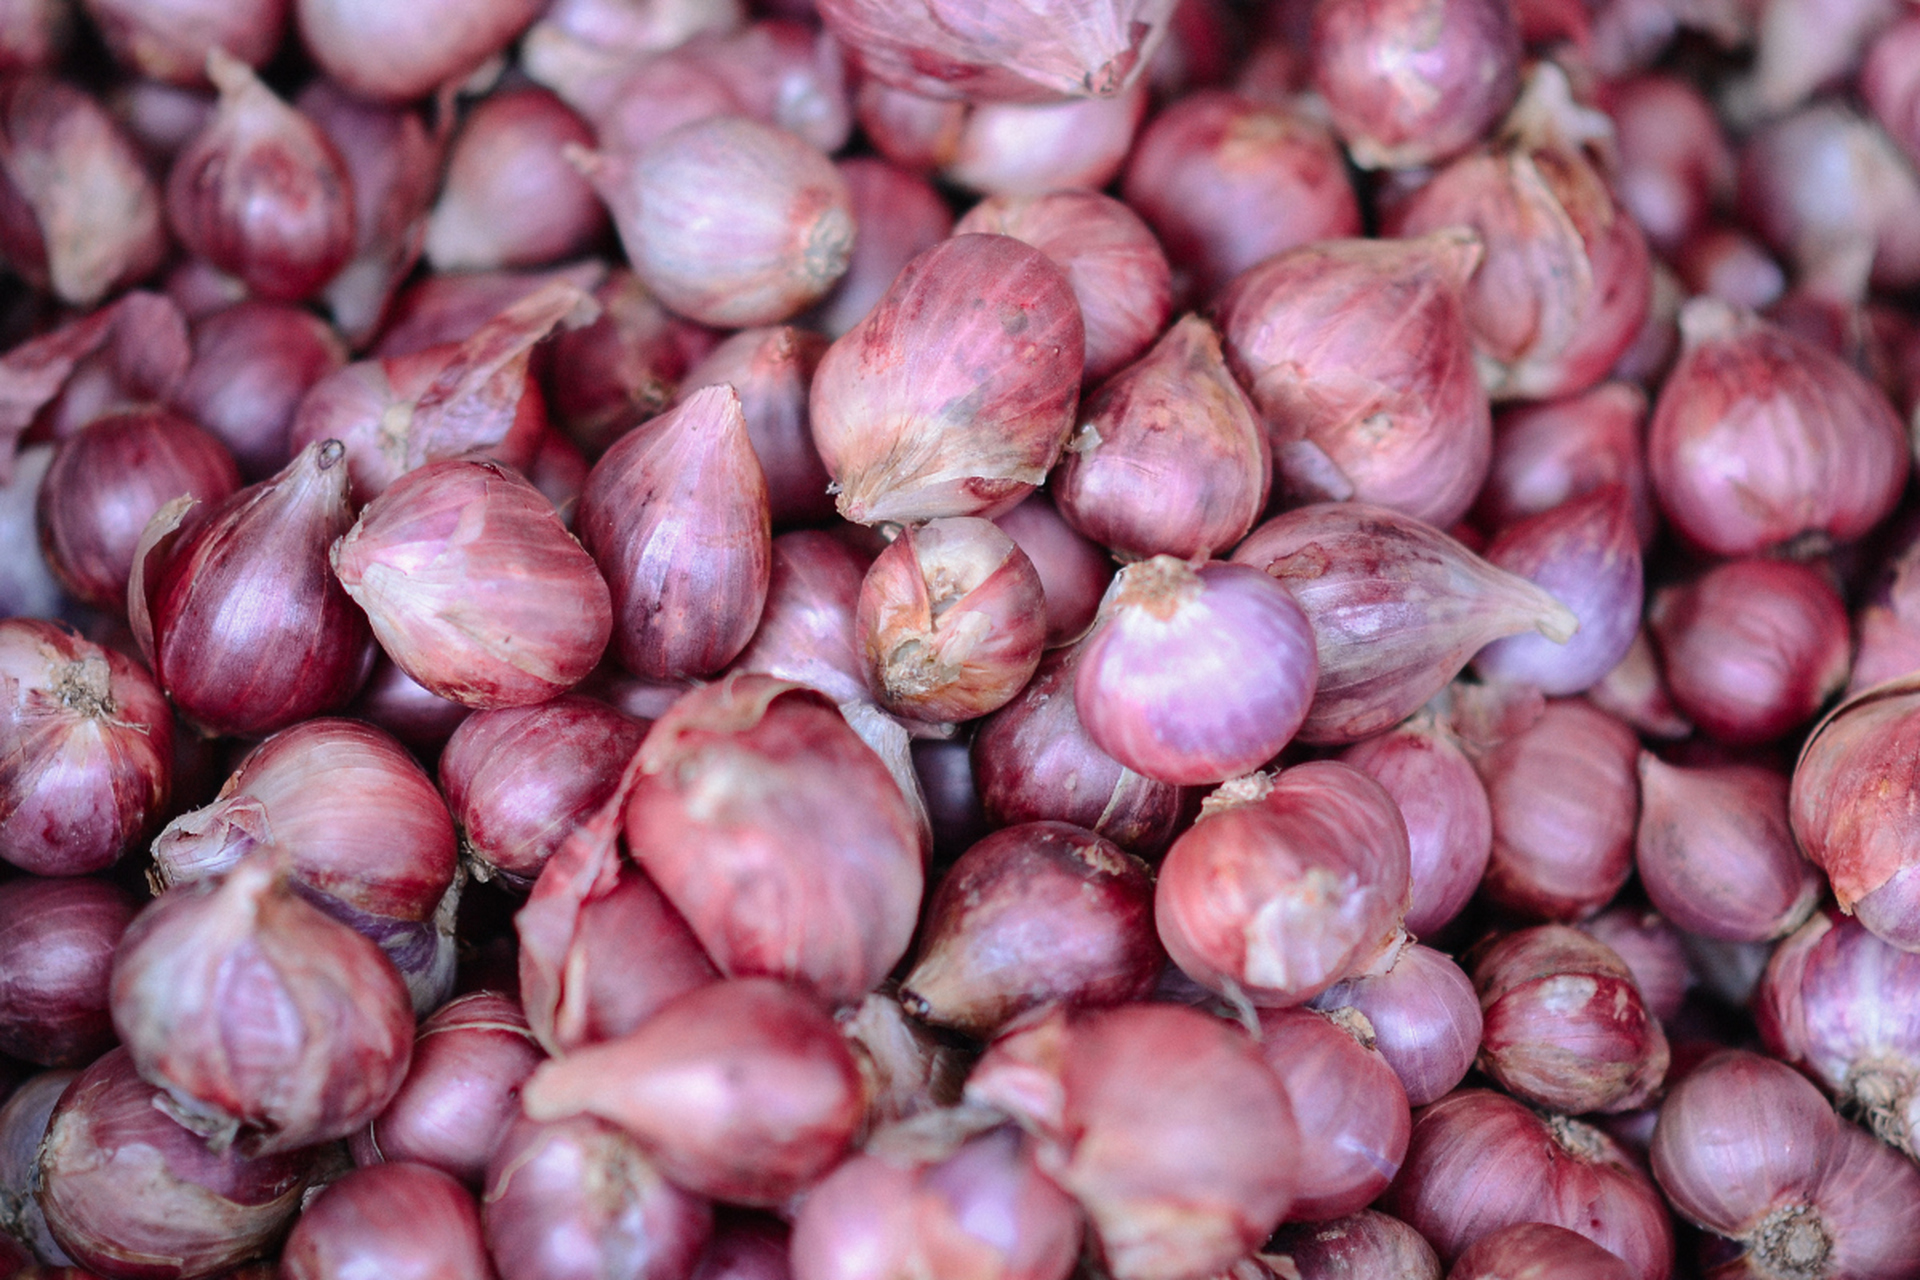 宝坻红皮大蒜,不只是调味,更是天津的文化符号 宝坻红皮大蒜,这个听